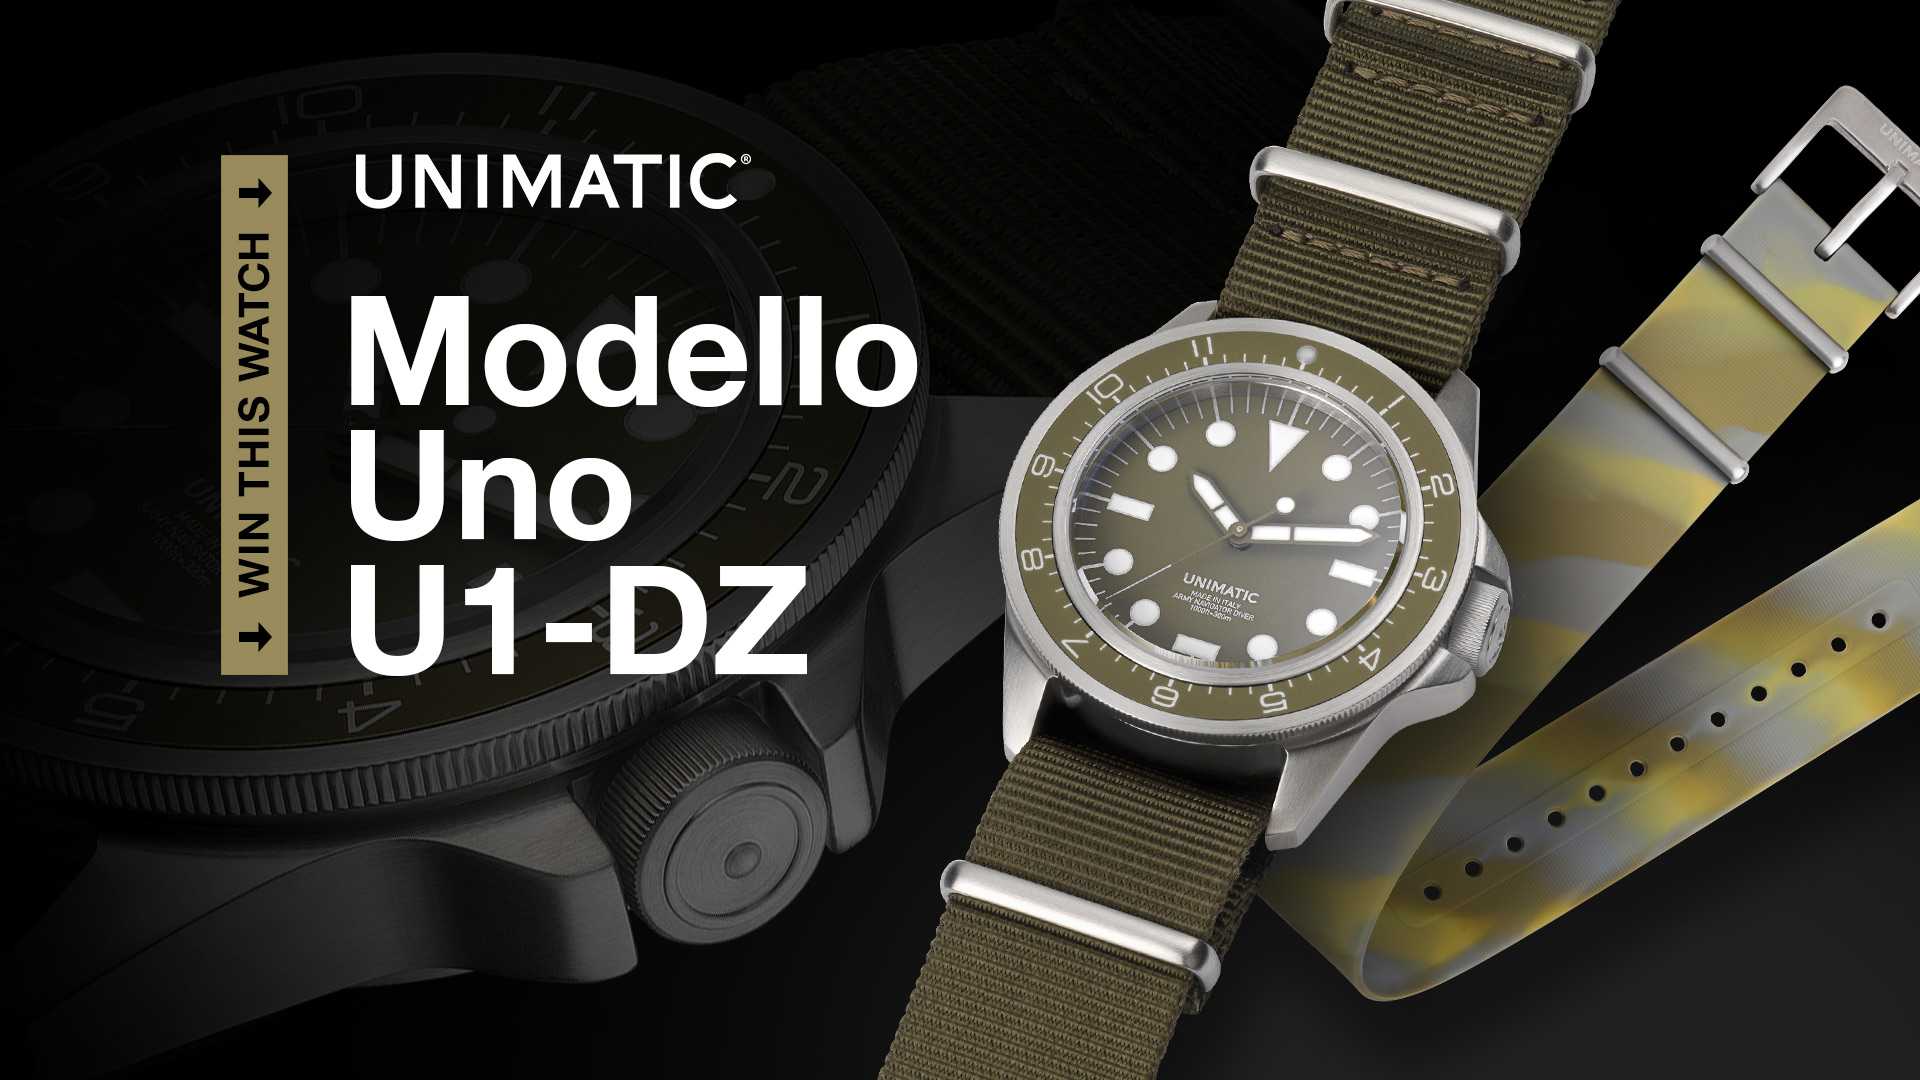 Winner Announced: Unimatic Modello Uno U1-DZ Limited Edition Watch